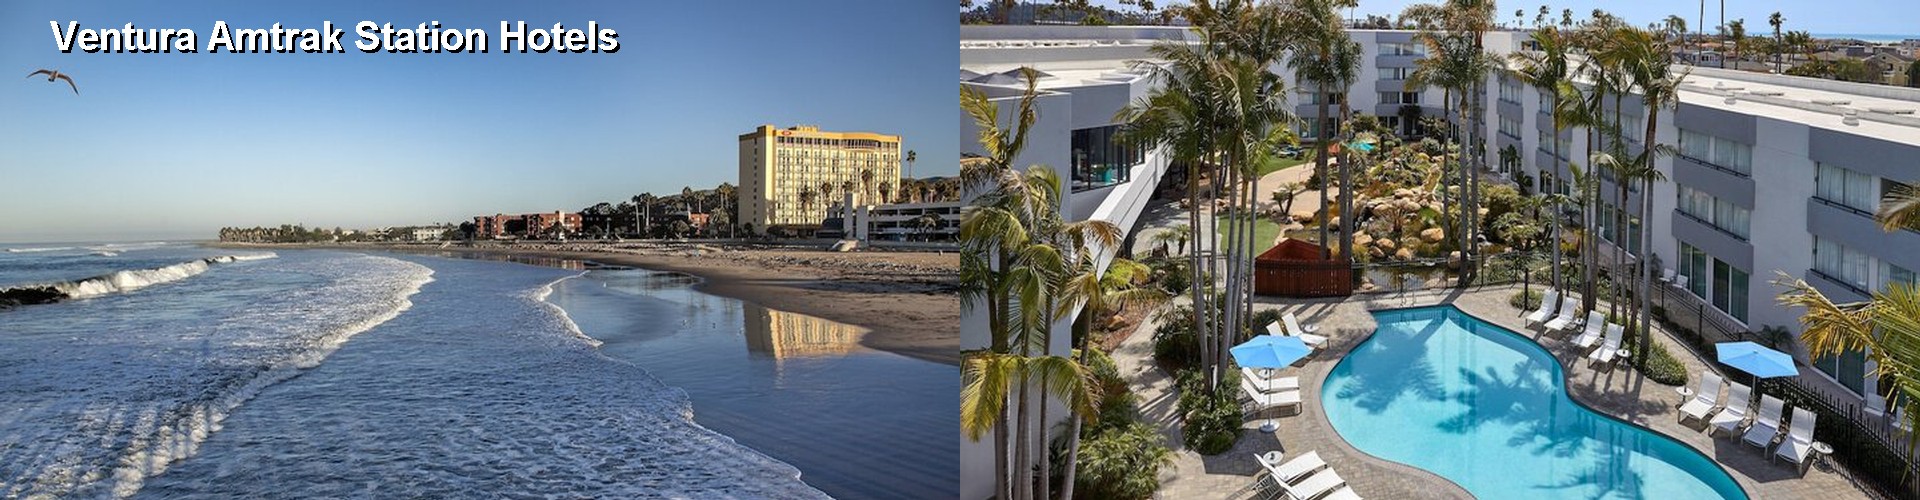 5 Best Hotels near Ventura Amtrak Station